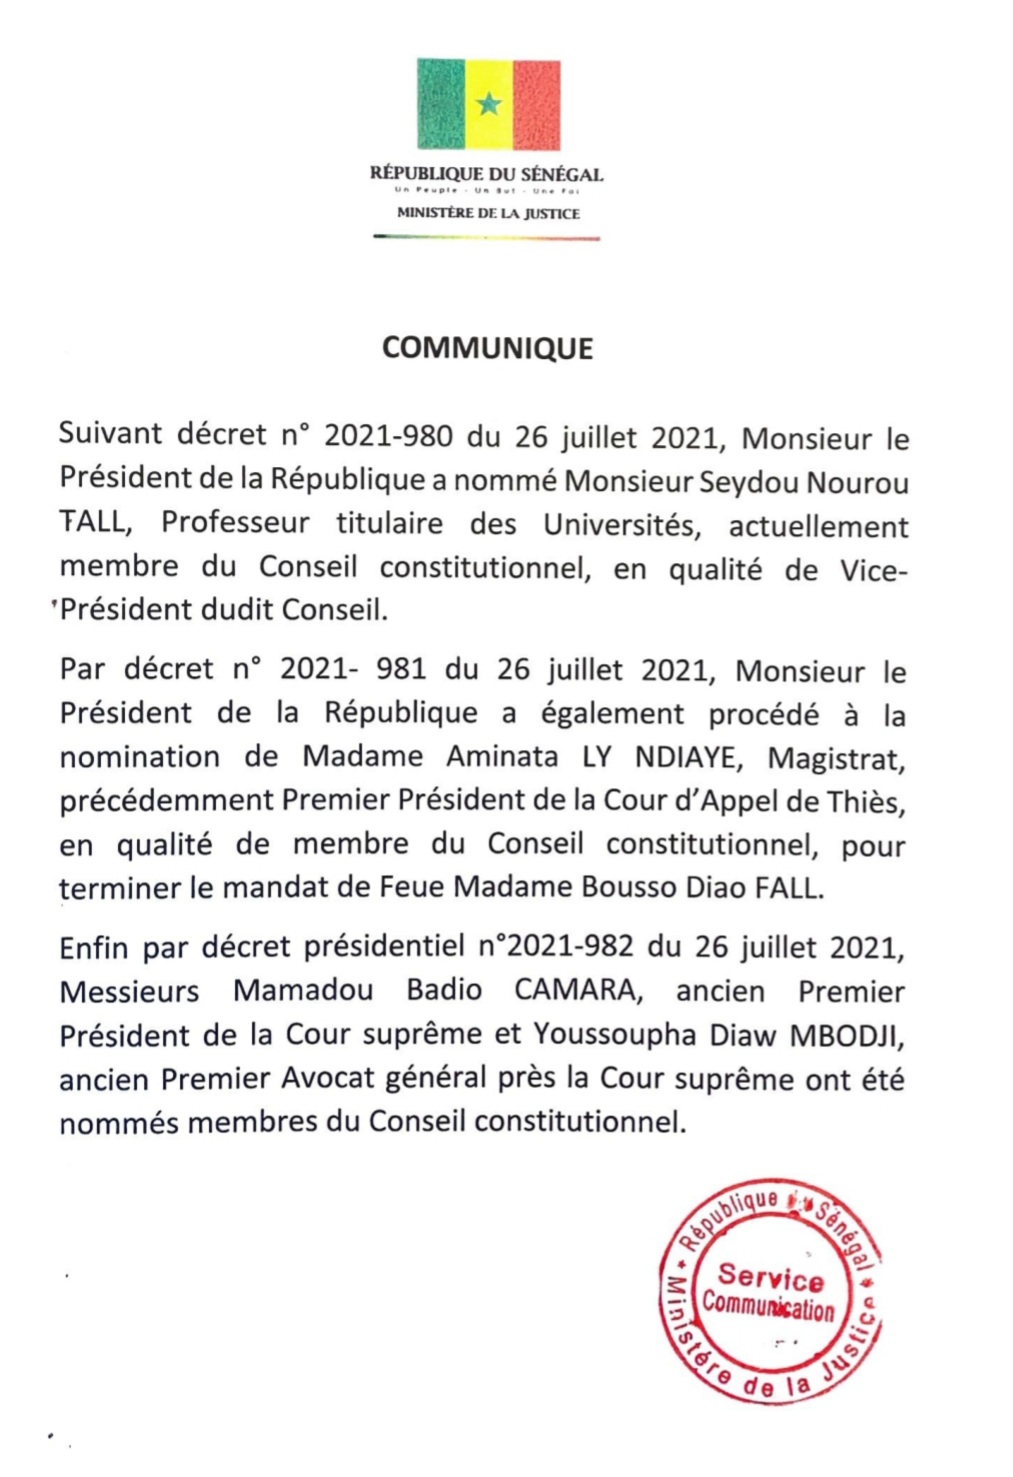 TROIS JUGES NOMMÉS AU CONSEIL CONSTITUTIONNEL (OFFICIEL)